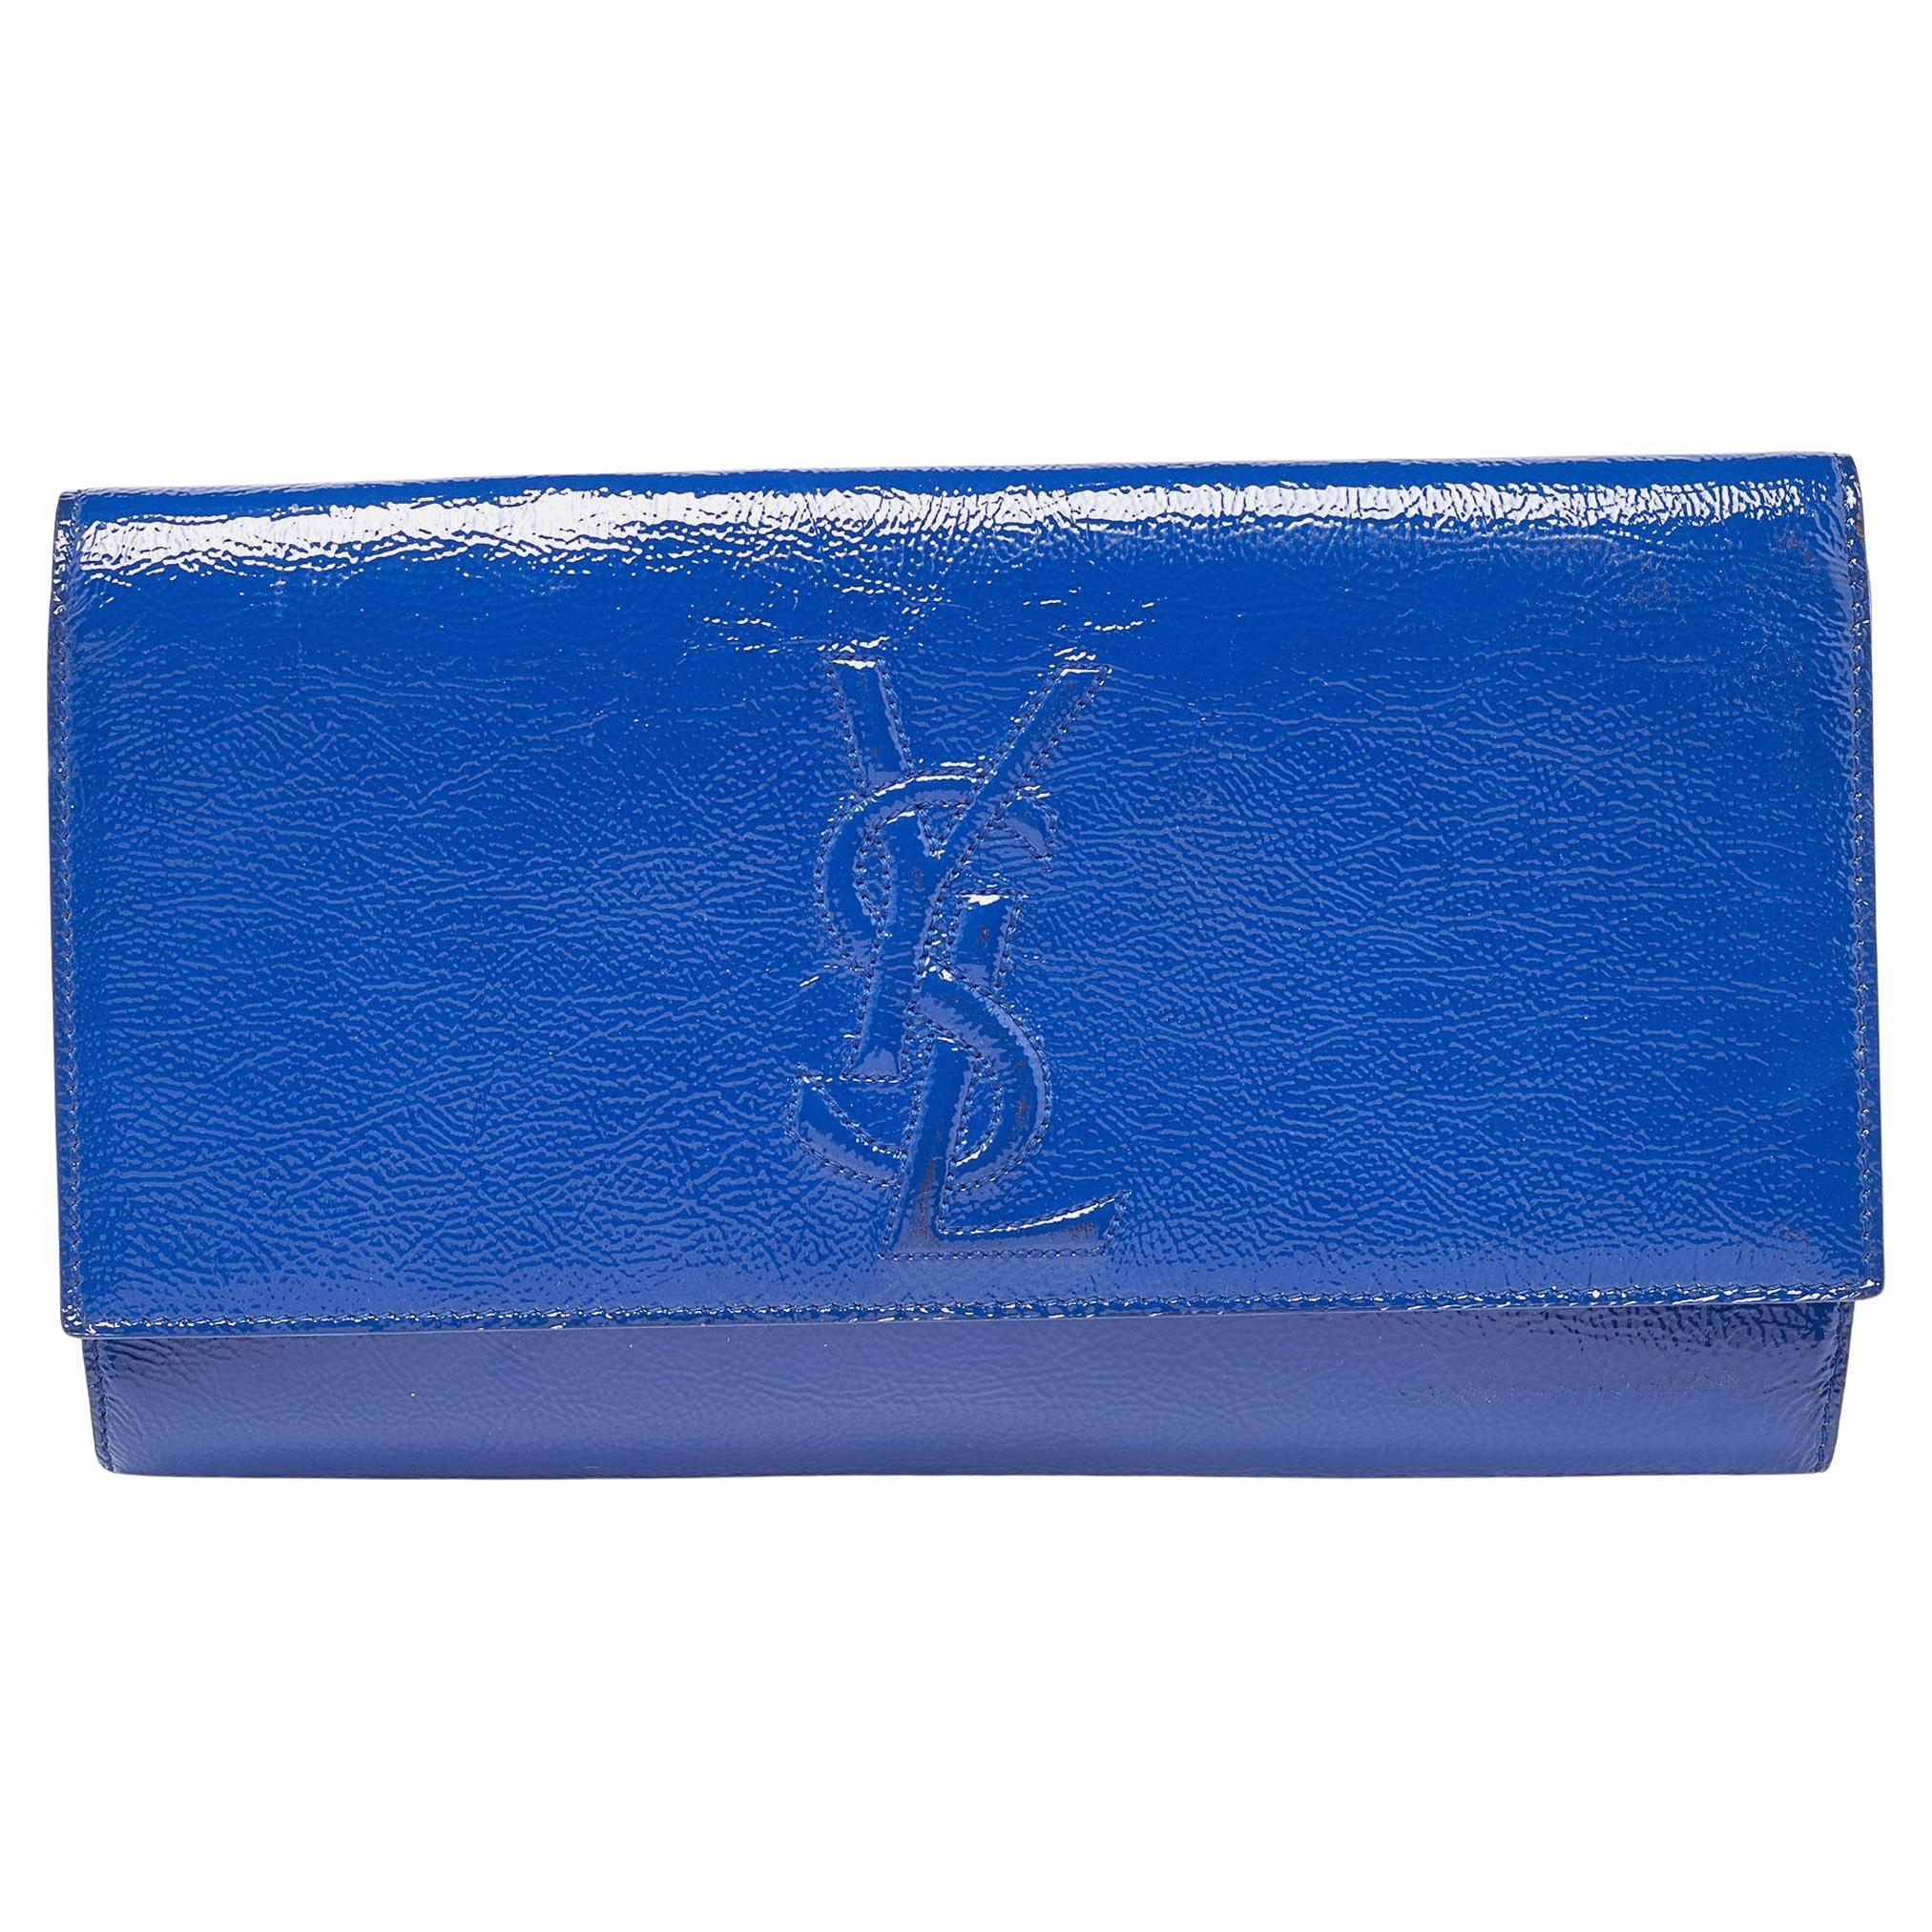 Yves Saint Laurent Blue Patent Leather Belle De Jour Flap Clutch For Sale